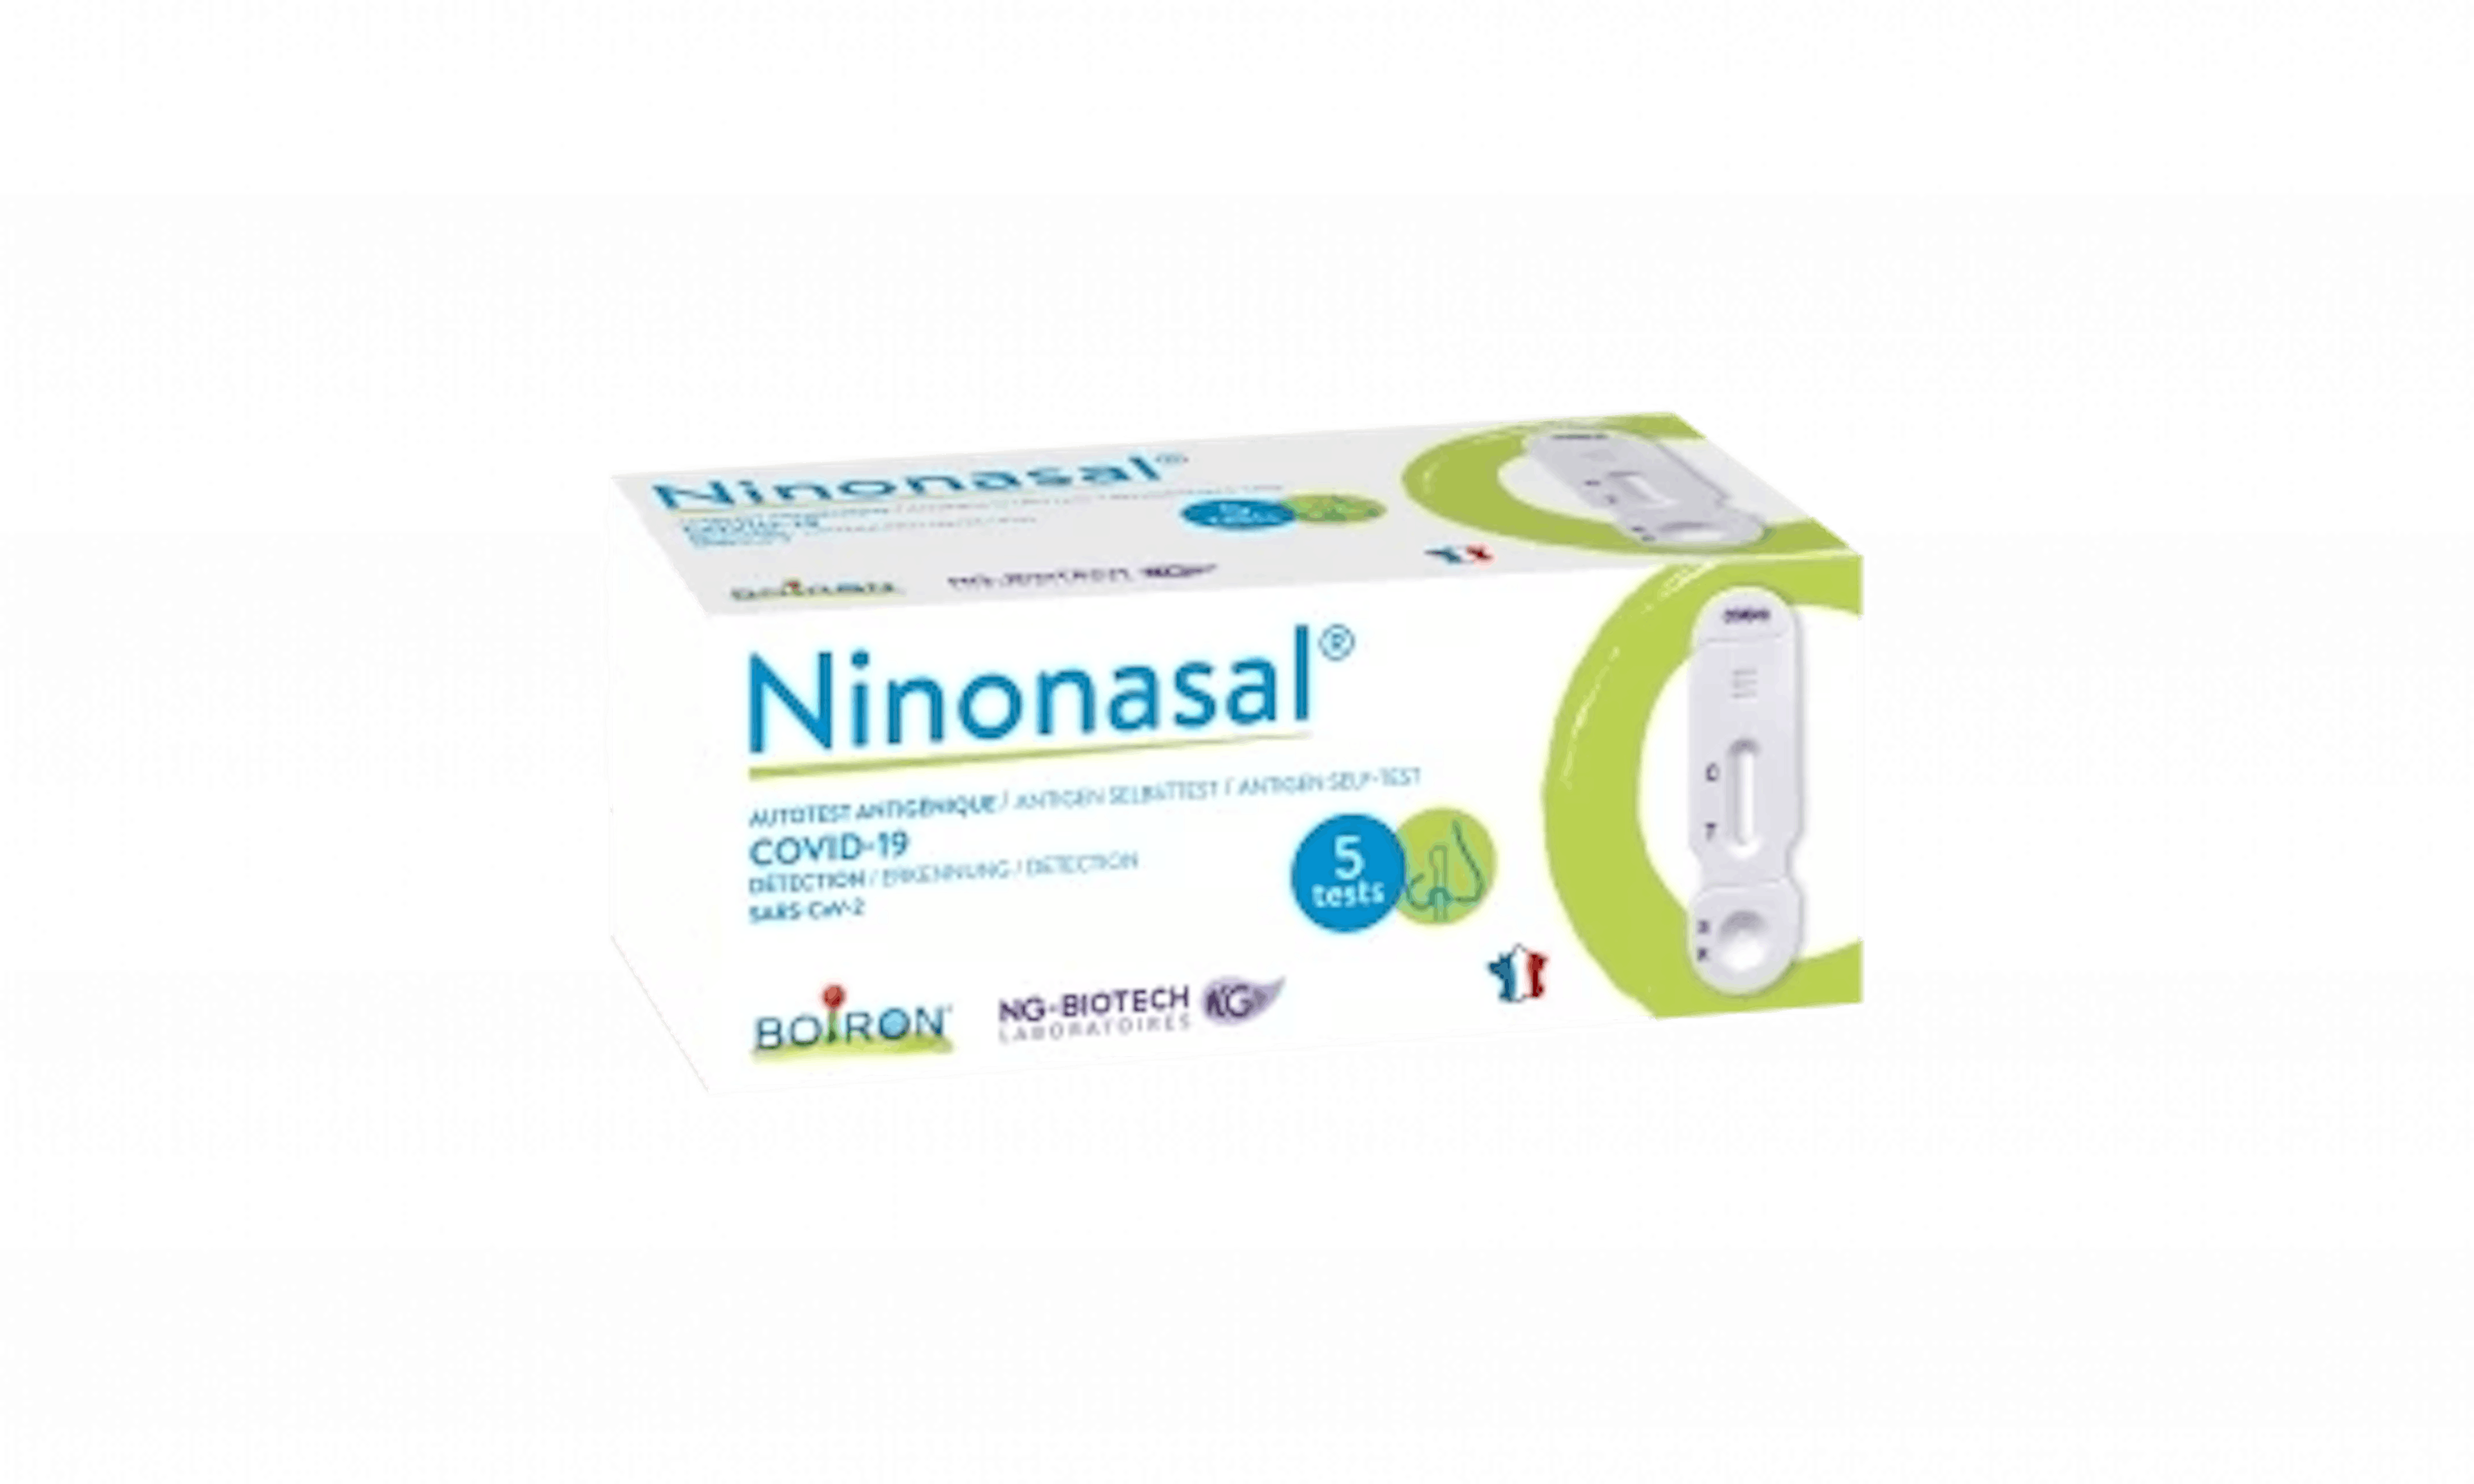 Ninonasal®